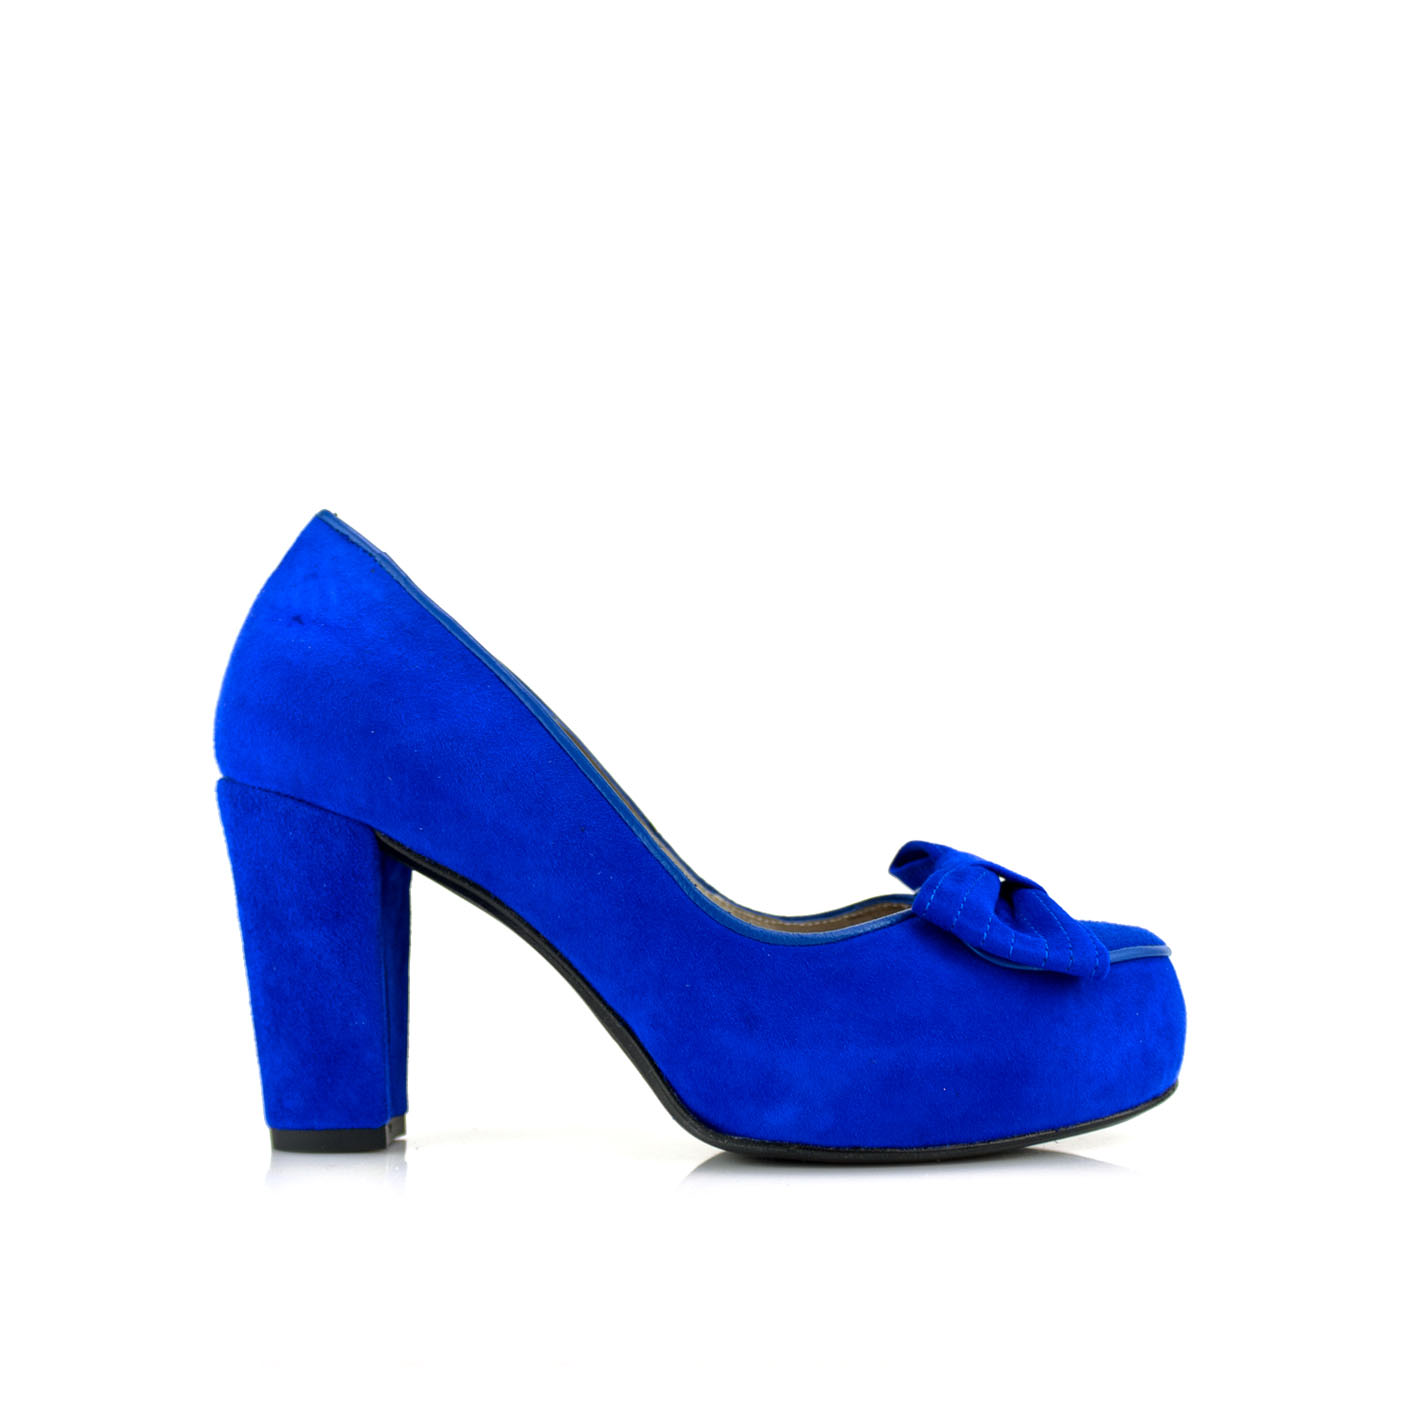 Visión general Desviación Apto Zapatos salon de mujer con lazo en ante azul y tacon de 8 cm